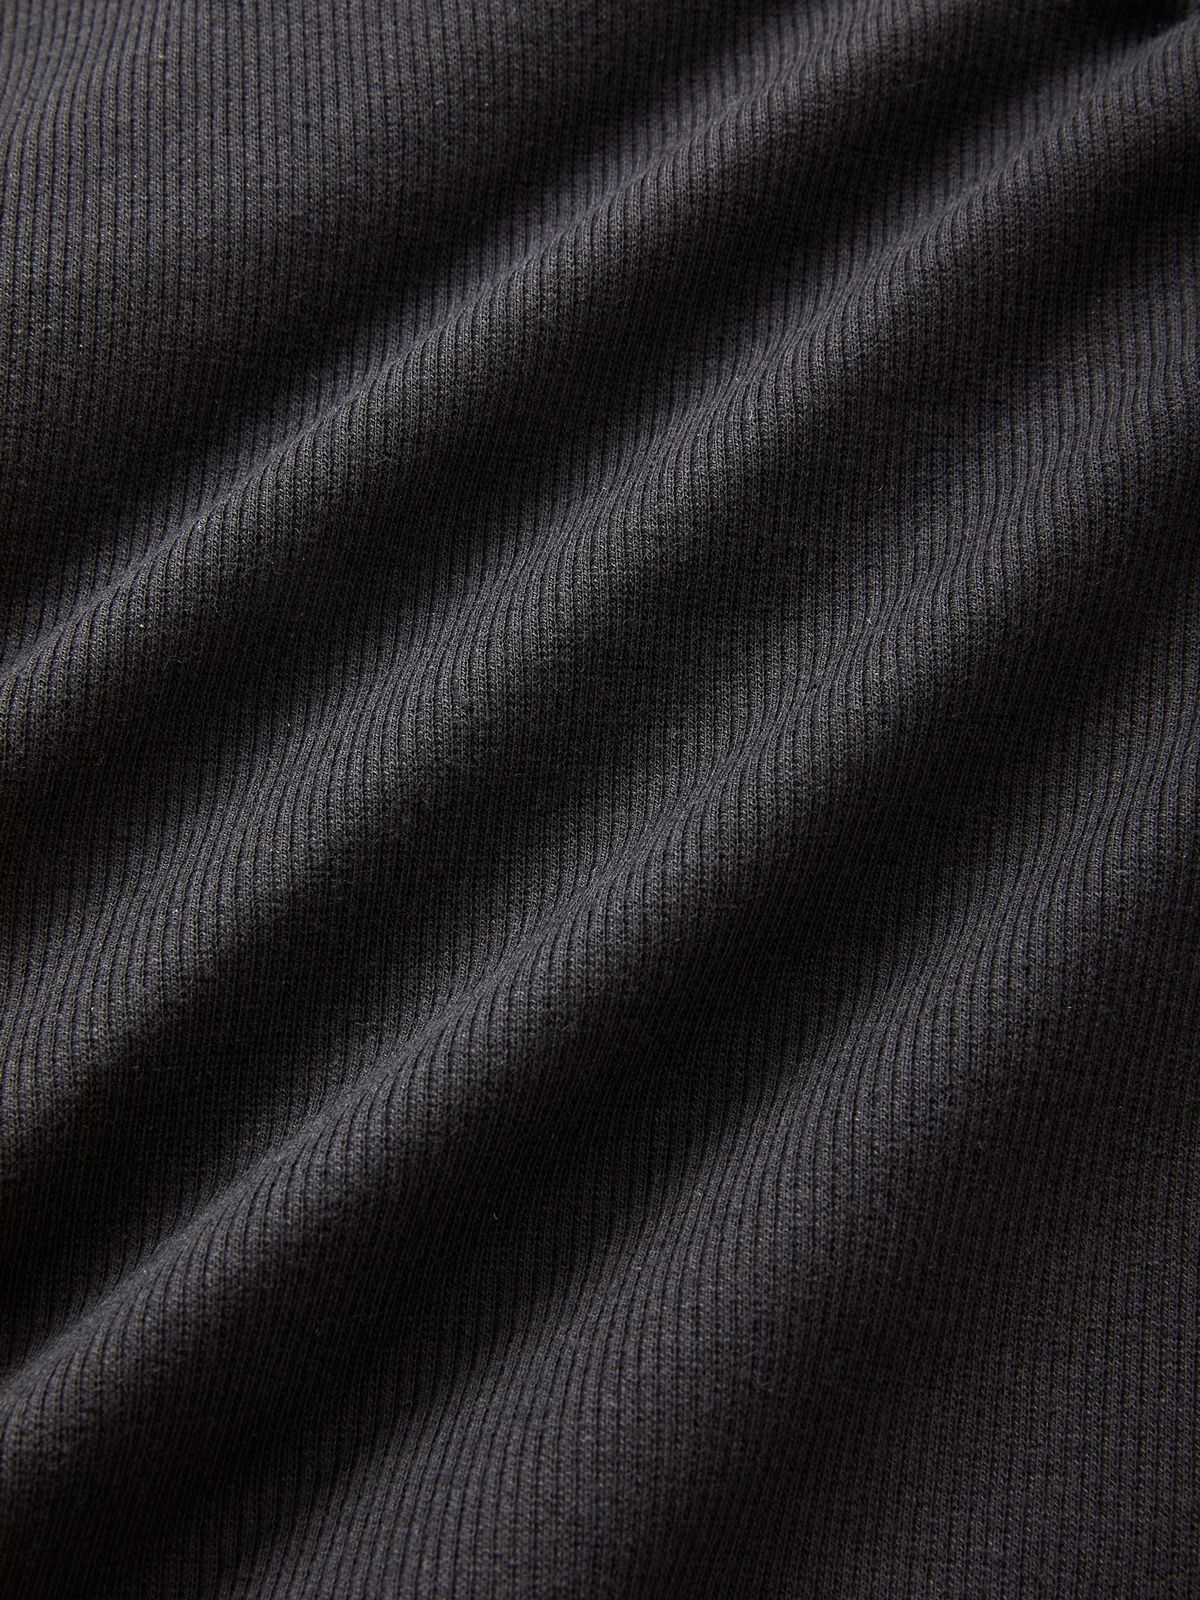 Rib Long Sleeve Printed Crop Top